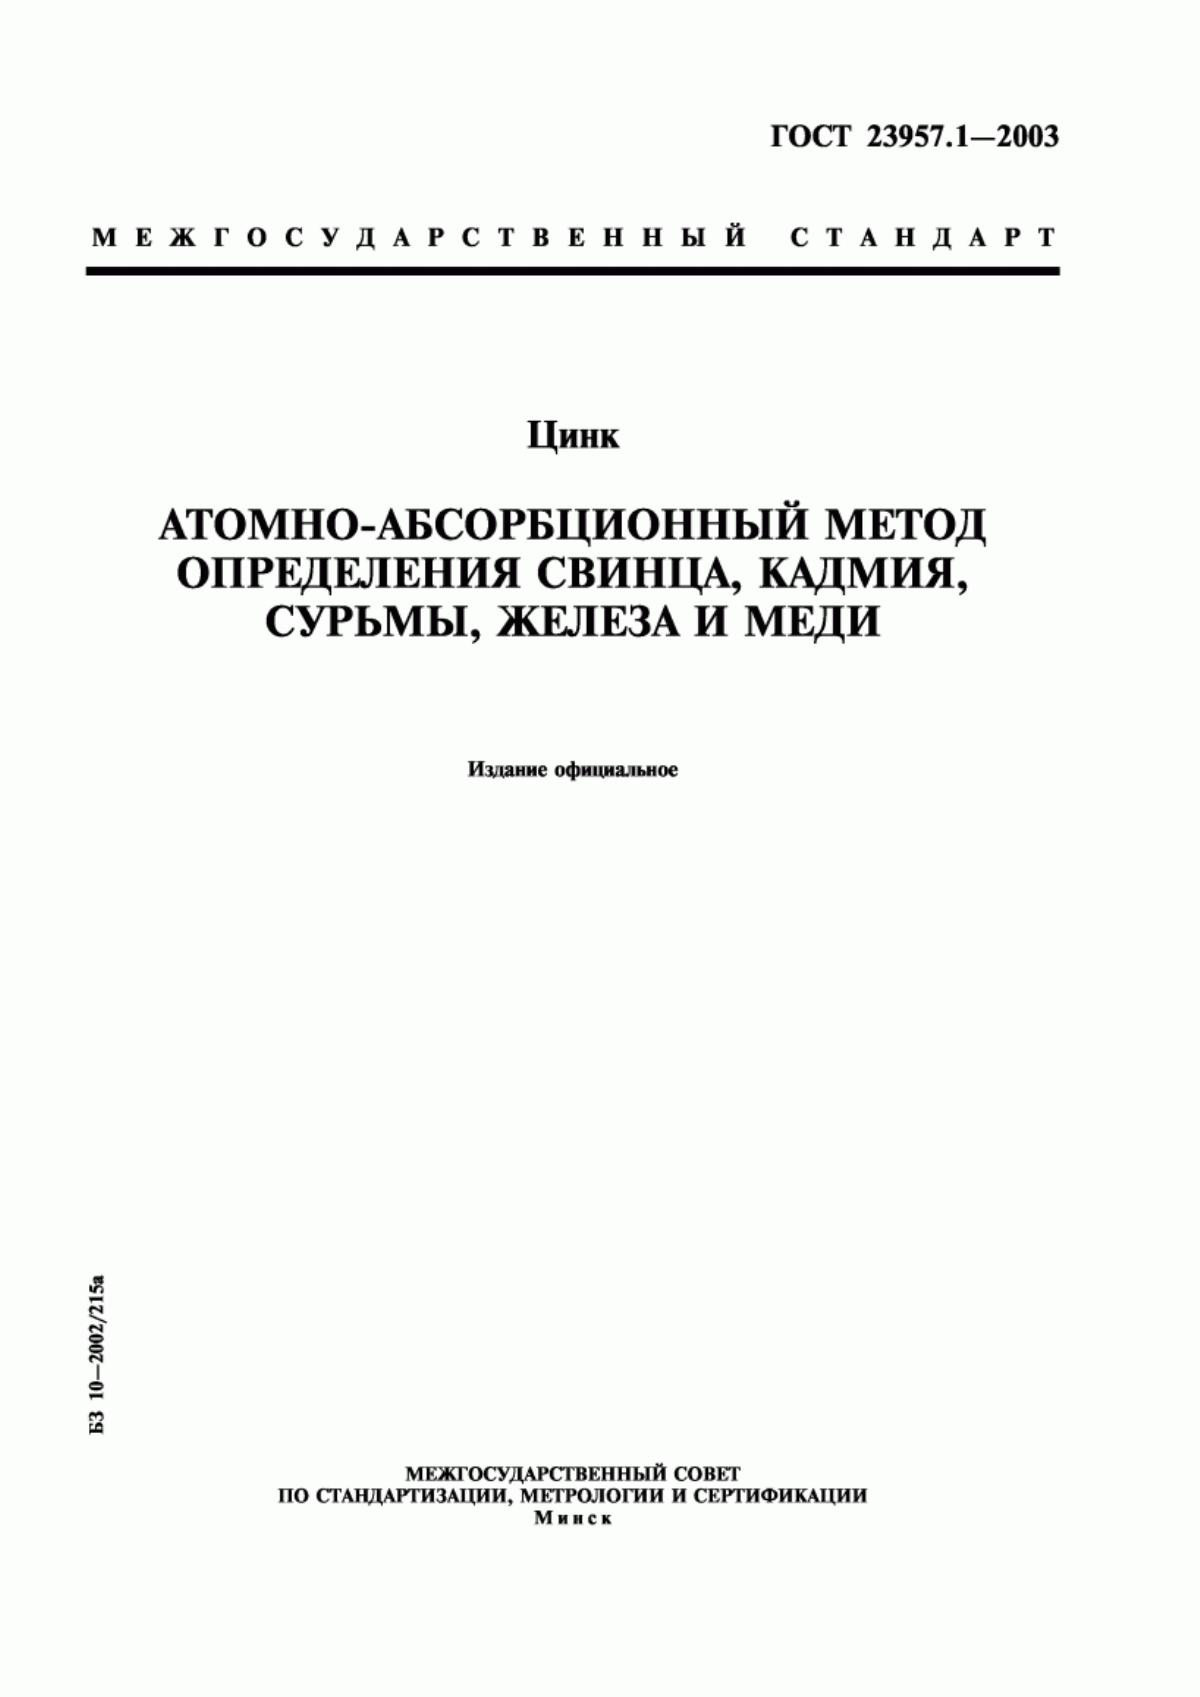 ГОСТ 23957.1-2003 Цинк. Атомно-абсорбционный метод определения свинца, кадмия, сурьмы, железа и меди